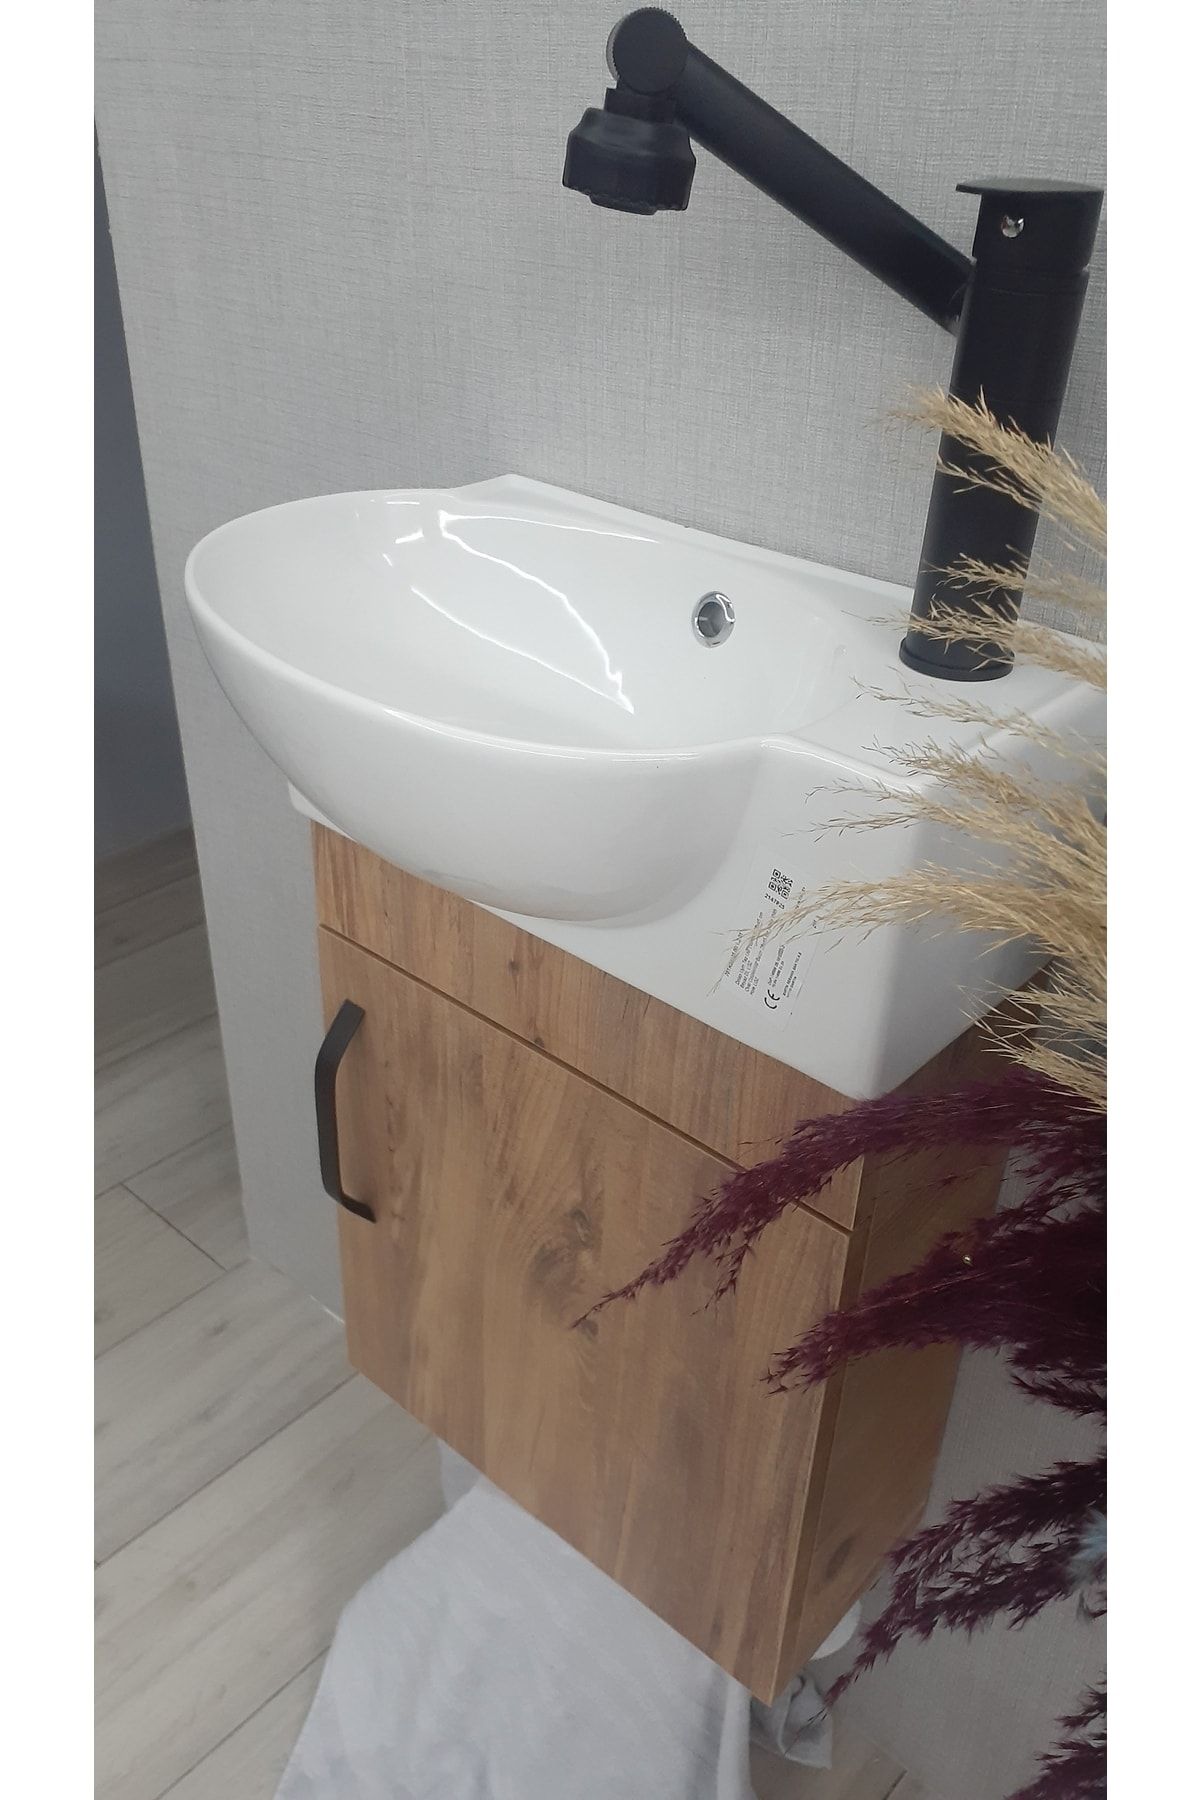 TURKUAZSERAMİK Turkuaz Banyo Ve Tuvalet Mini Köşe Lavabo 28*45 cm Fiyatı,  Yorumları - Trendyol